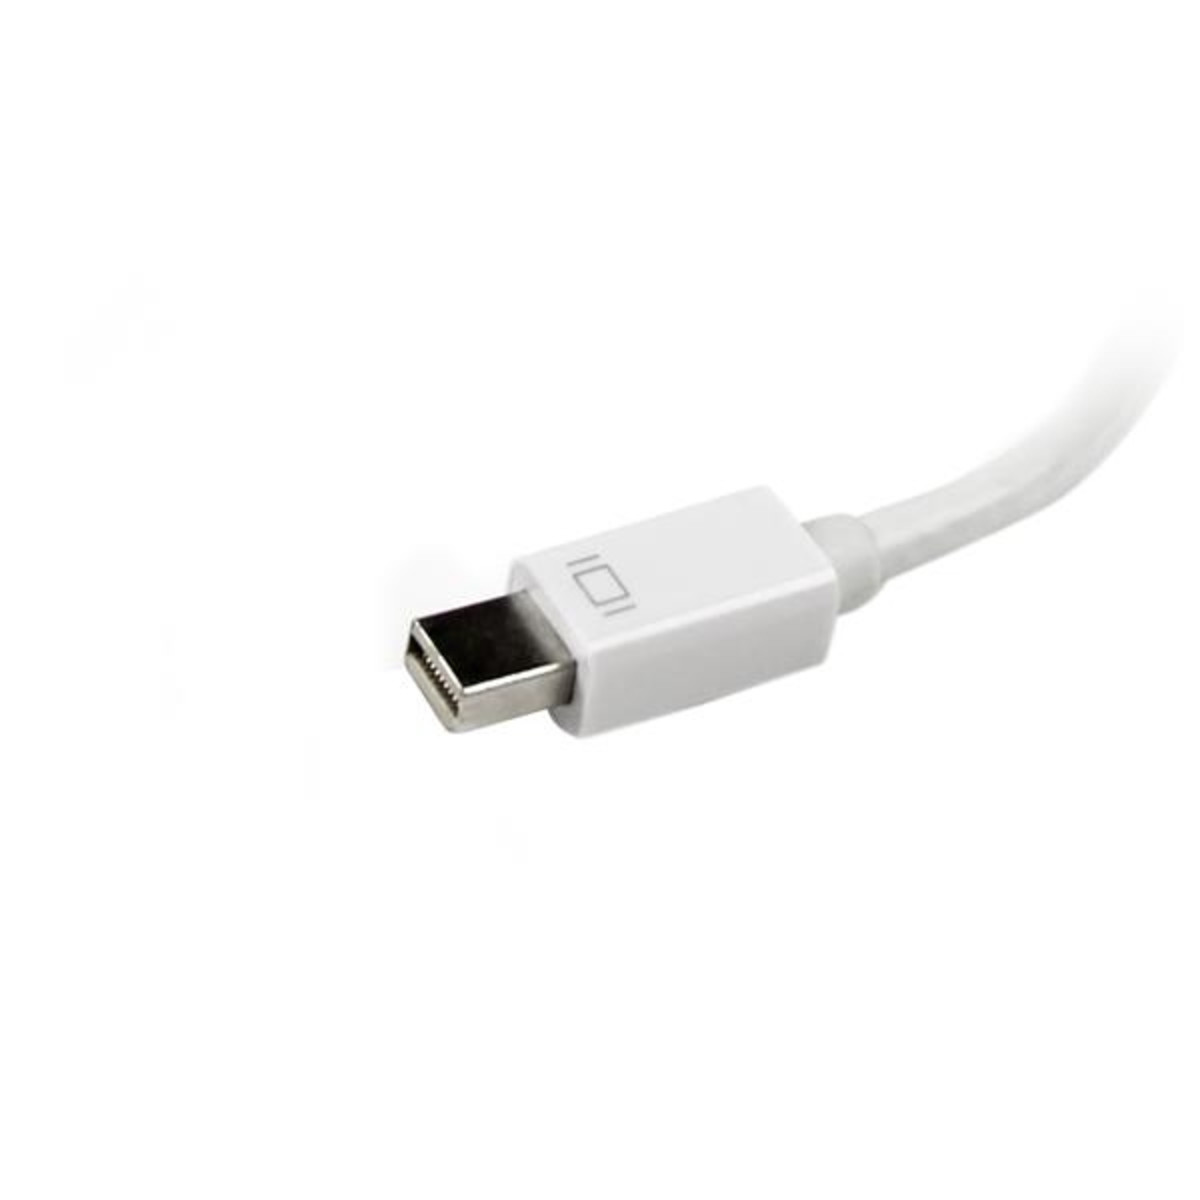 Mini DP-VGA/DVI/HDMI Adapter for MacBook